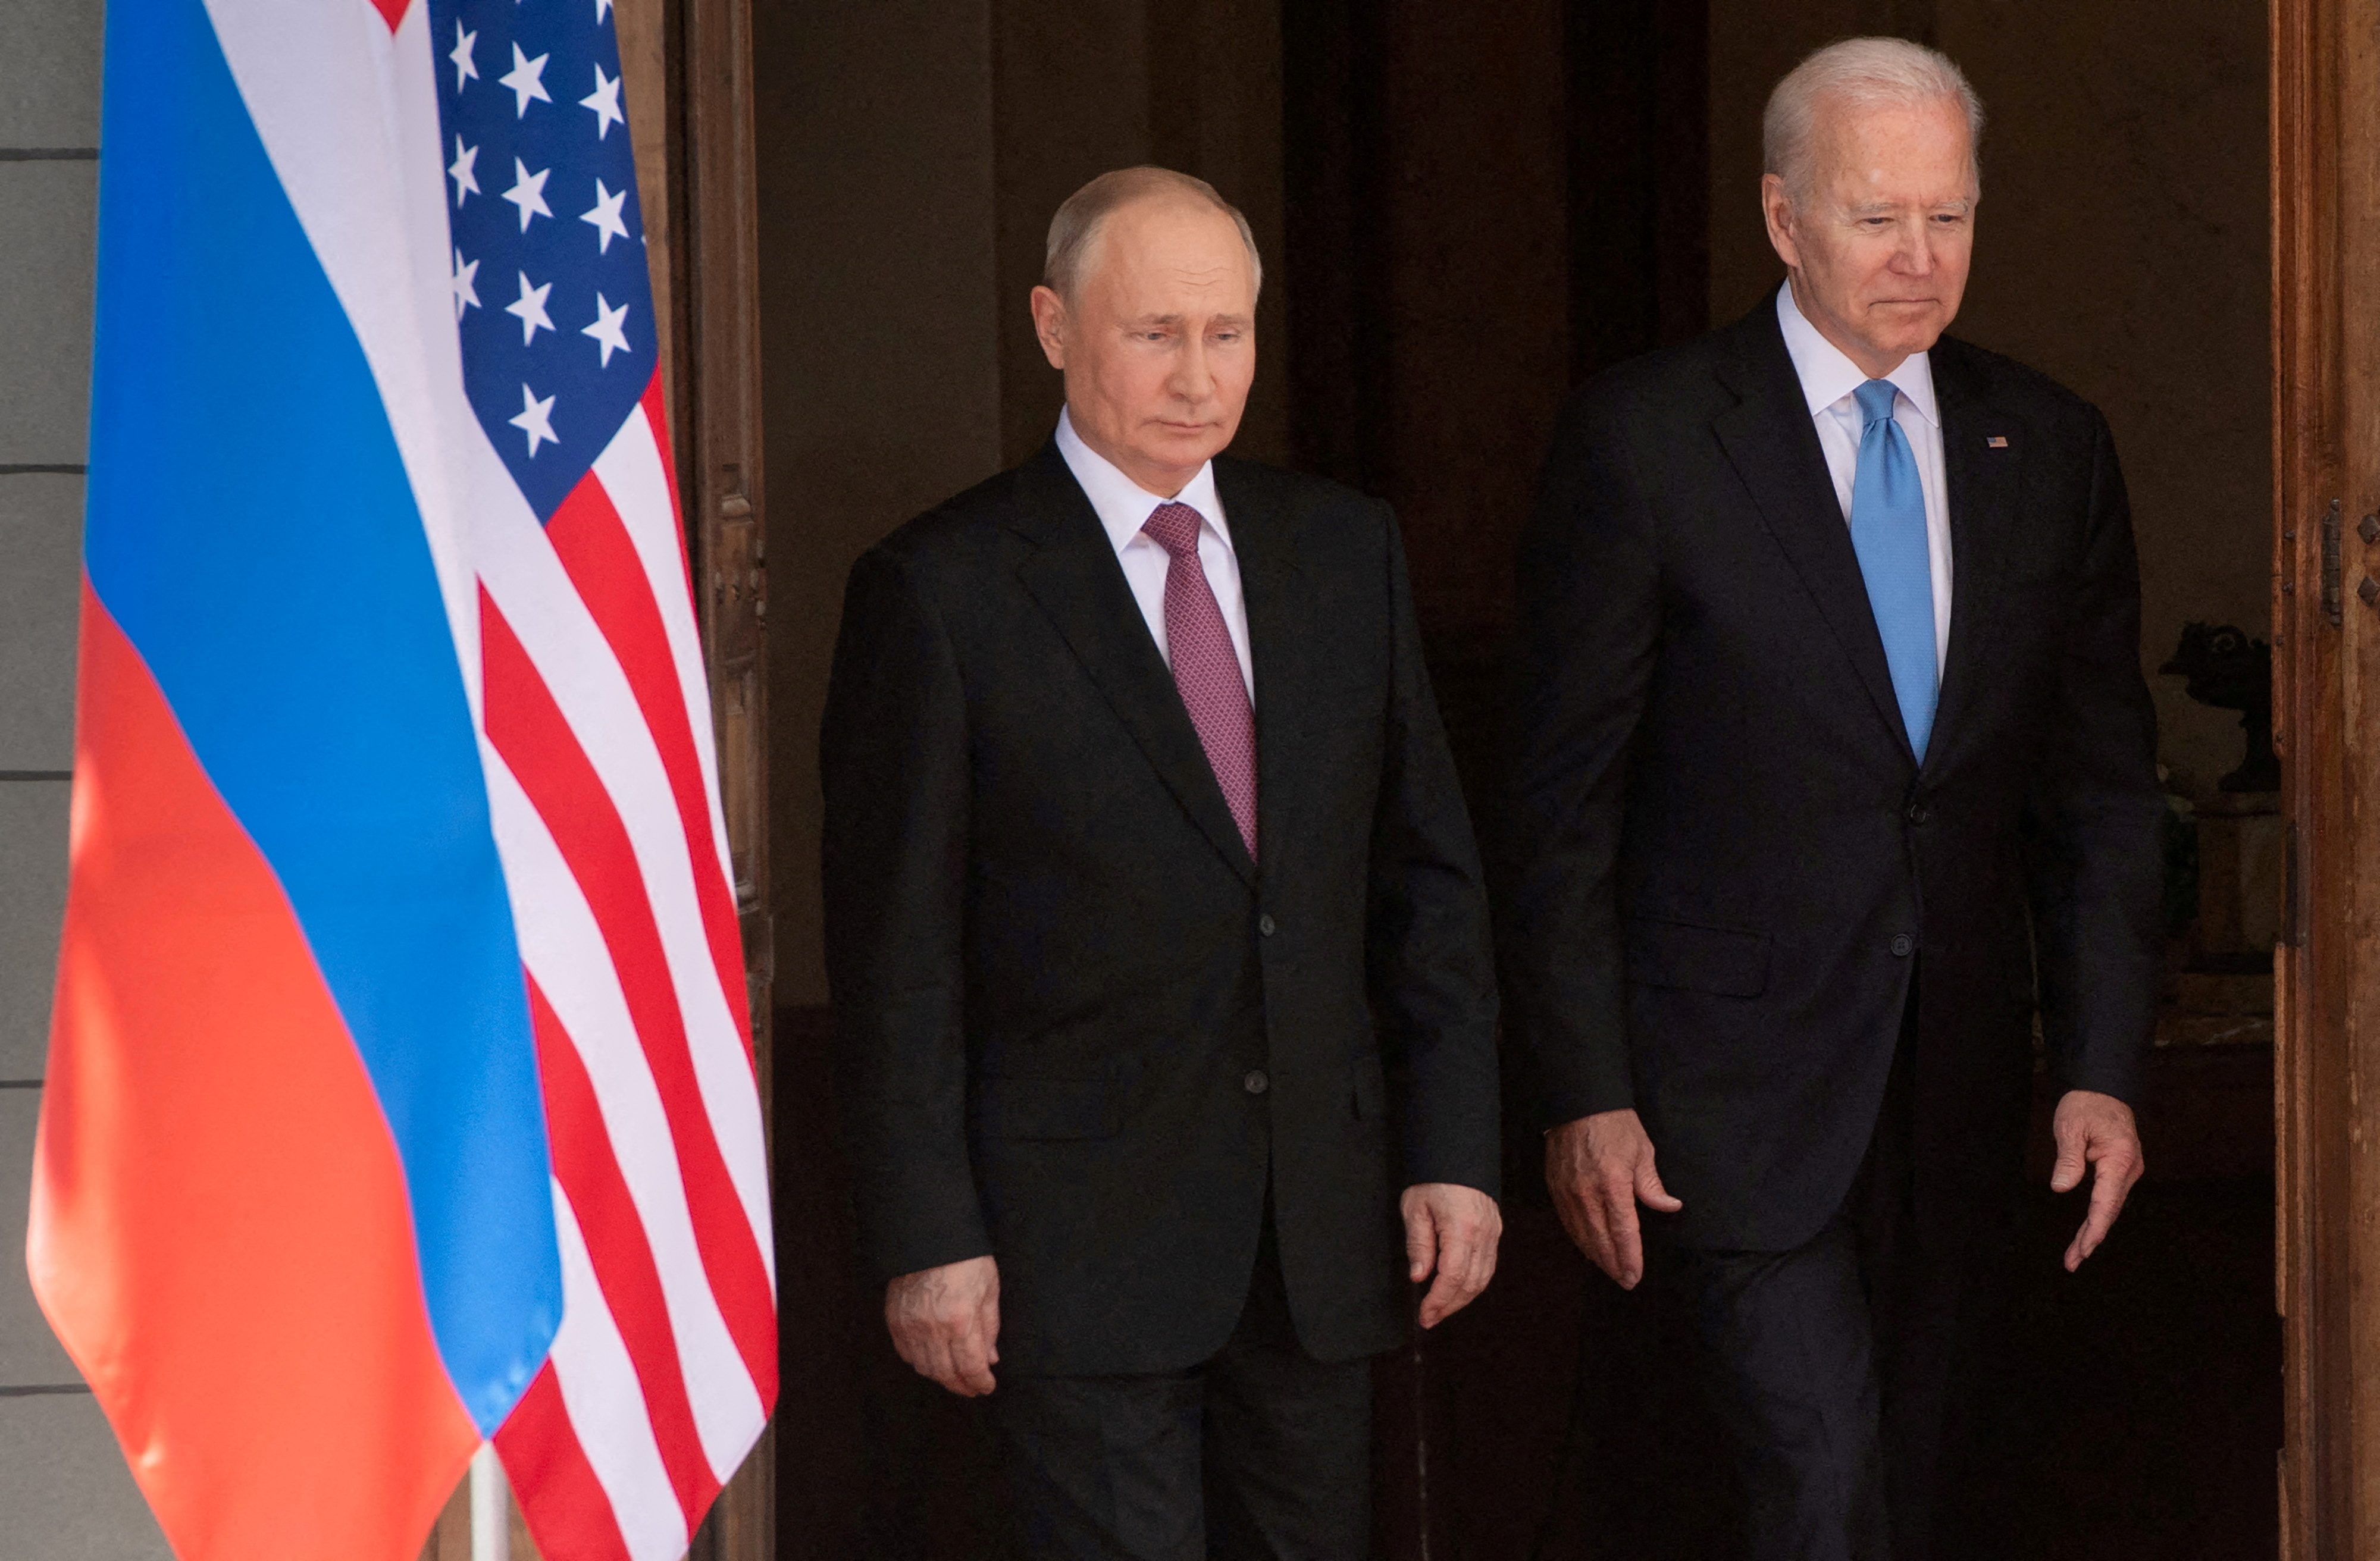 ABŞ silahları ilə Rusiyaya hücum edilir: Moskvanın reaksiyası nə olacaq? – Beynəlxalq ekspertin şərhində